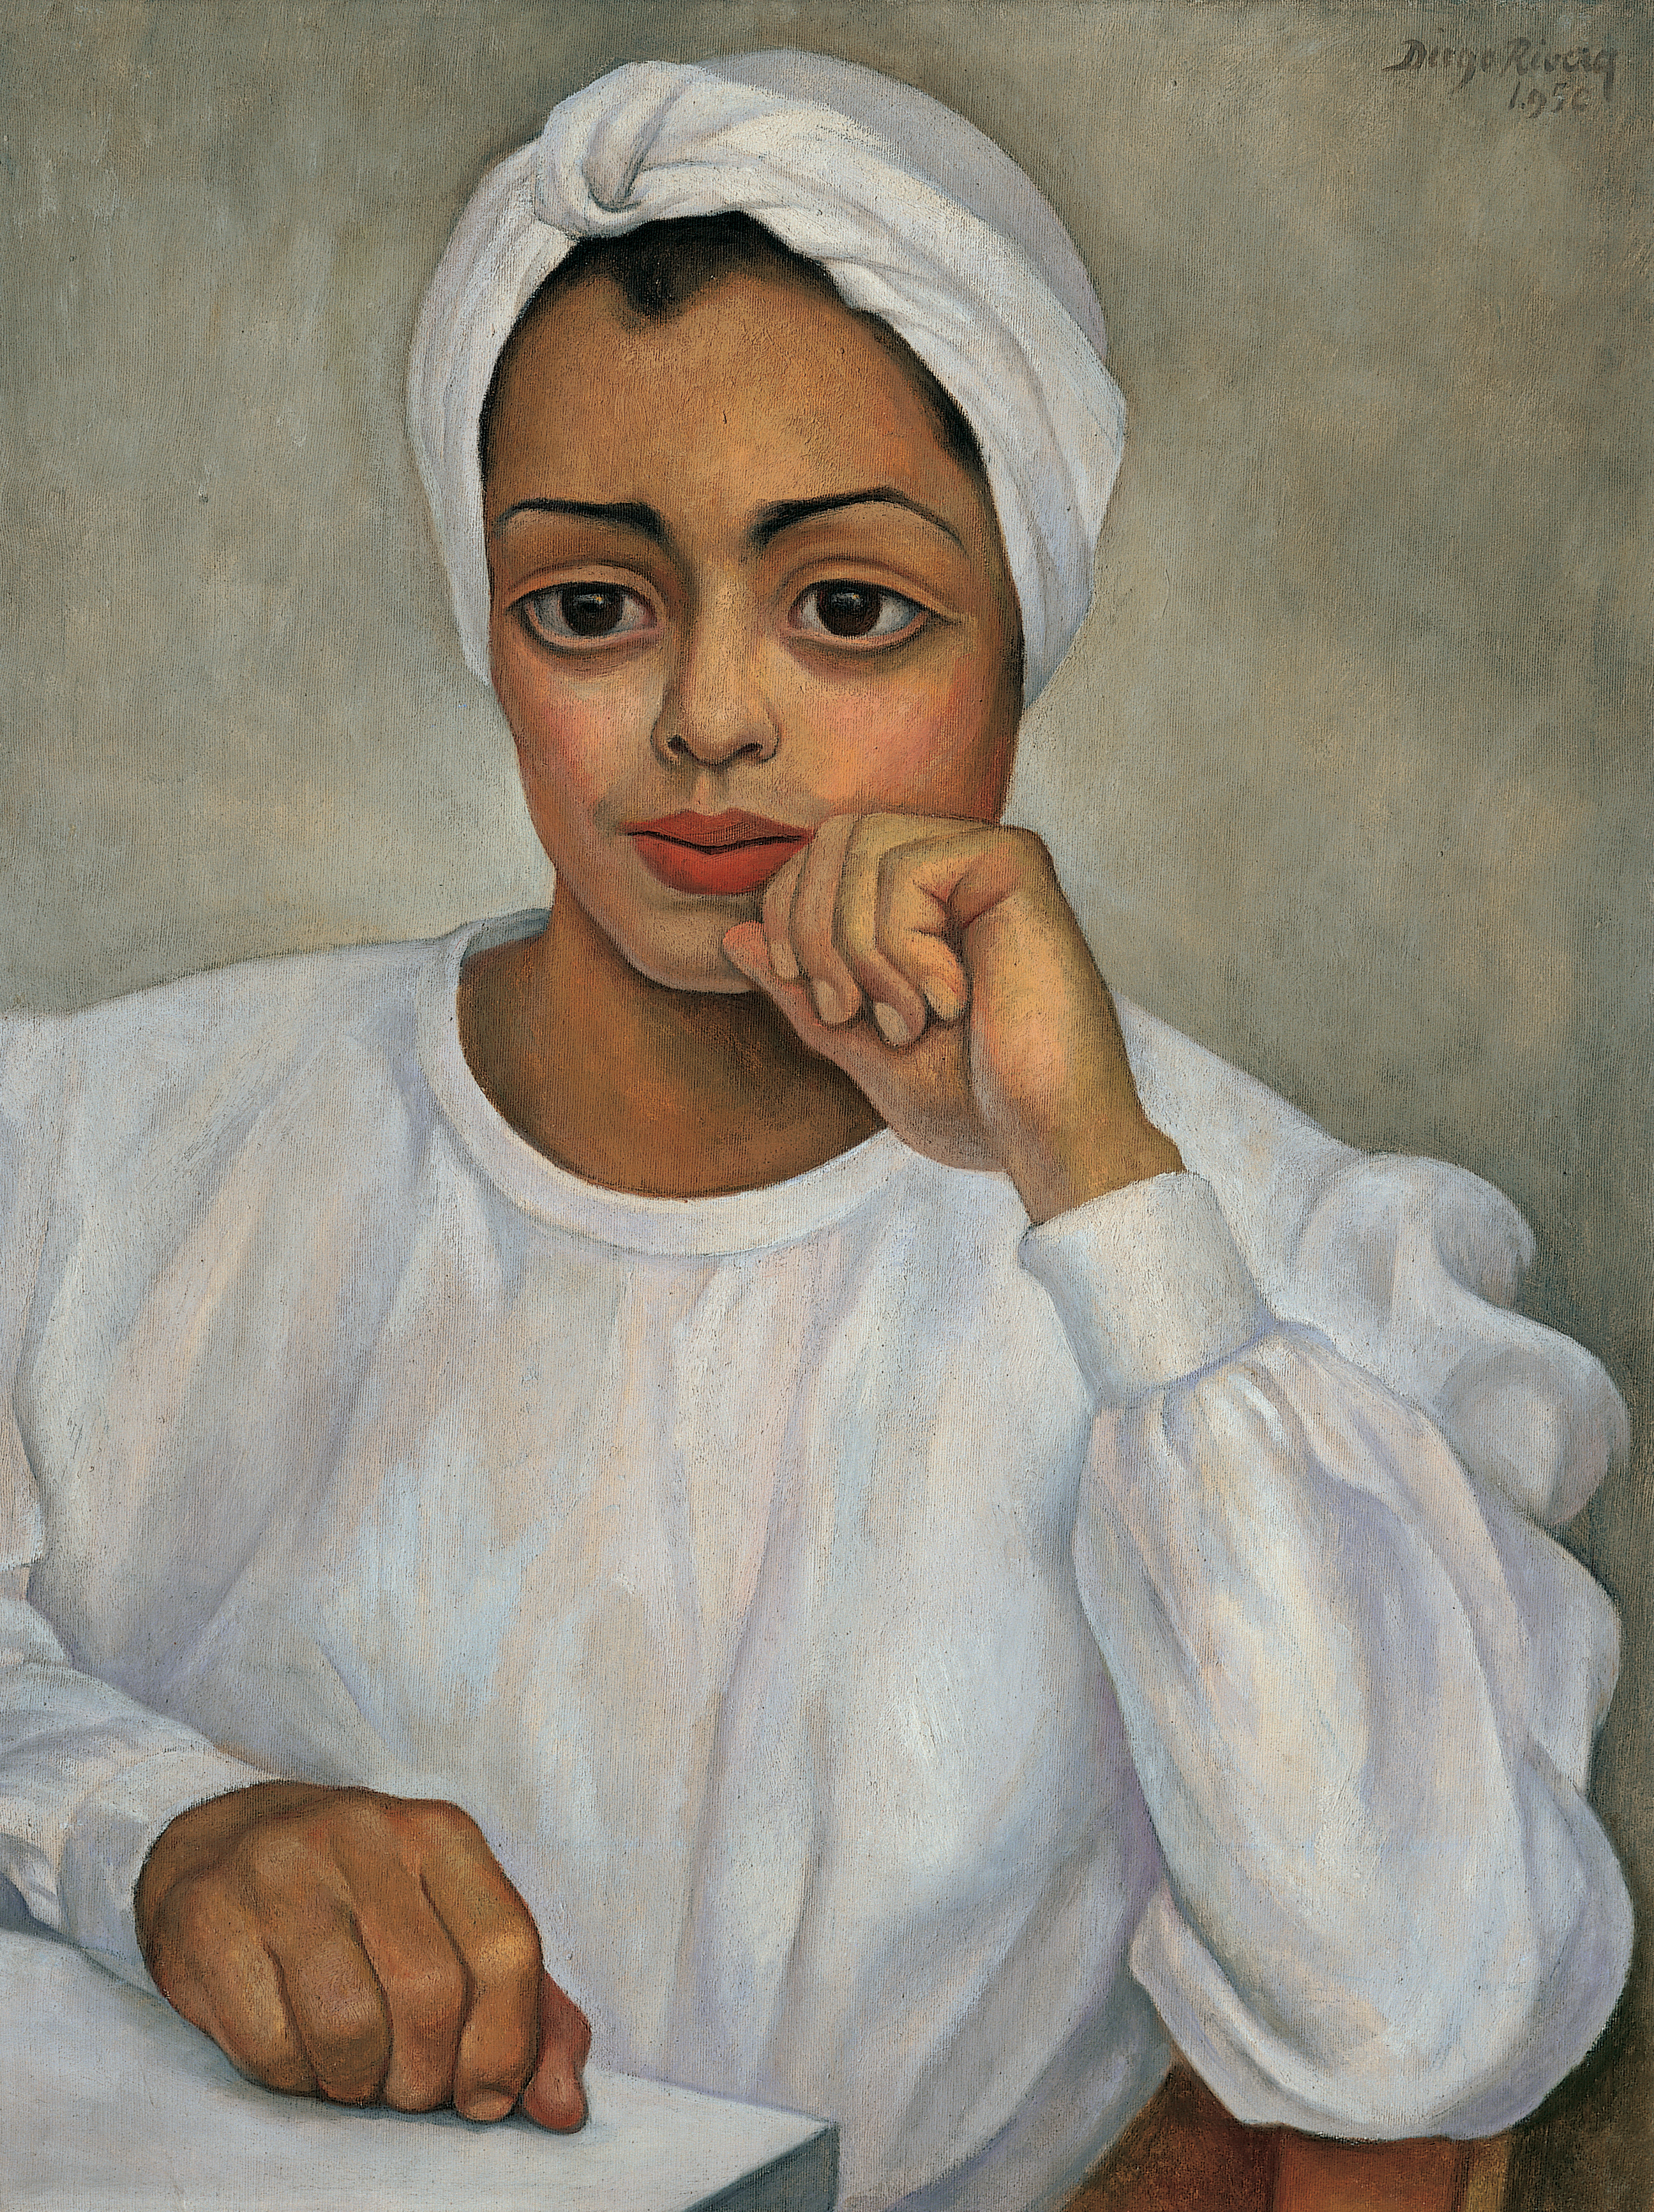 멕시코인 의사(일마 멘도사의 초상화) (Mexican Doctor (Portrait of Irma Mendoza)) by Diego Rivera - 1950 - 71 x 50 cm 